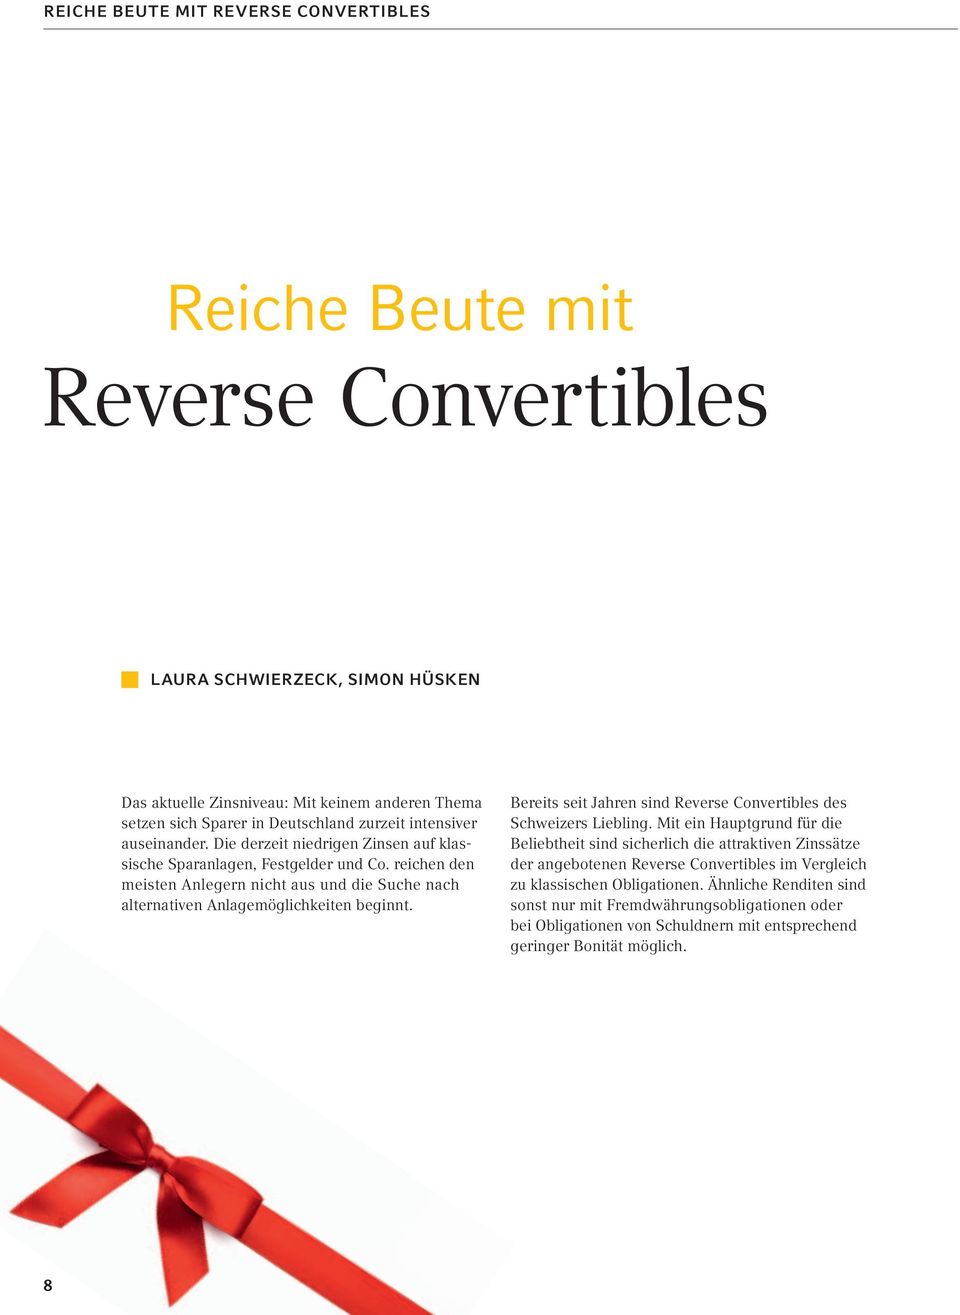 reichen den meisten Anlegern nicht aus und die Suche nach alternativen Anlagemöglichkeiten beginnt. Bereits seit Jahren sind Reverse Convertibles des Schweizers Liebling.